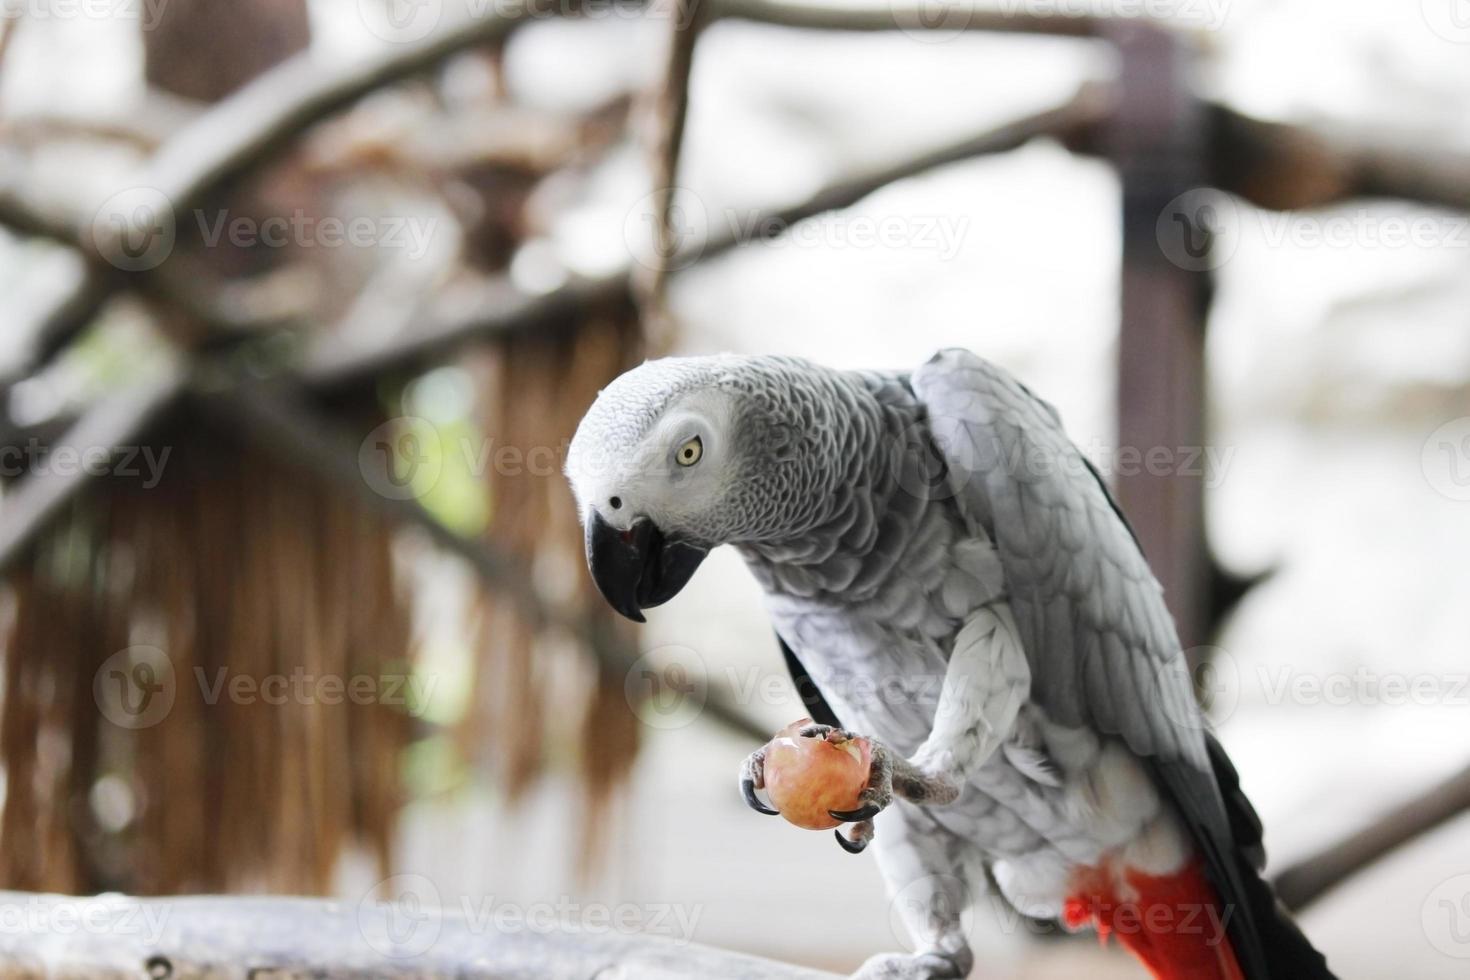 papagaio cinza africano foto